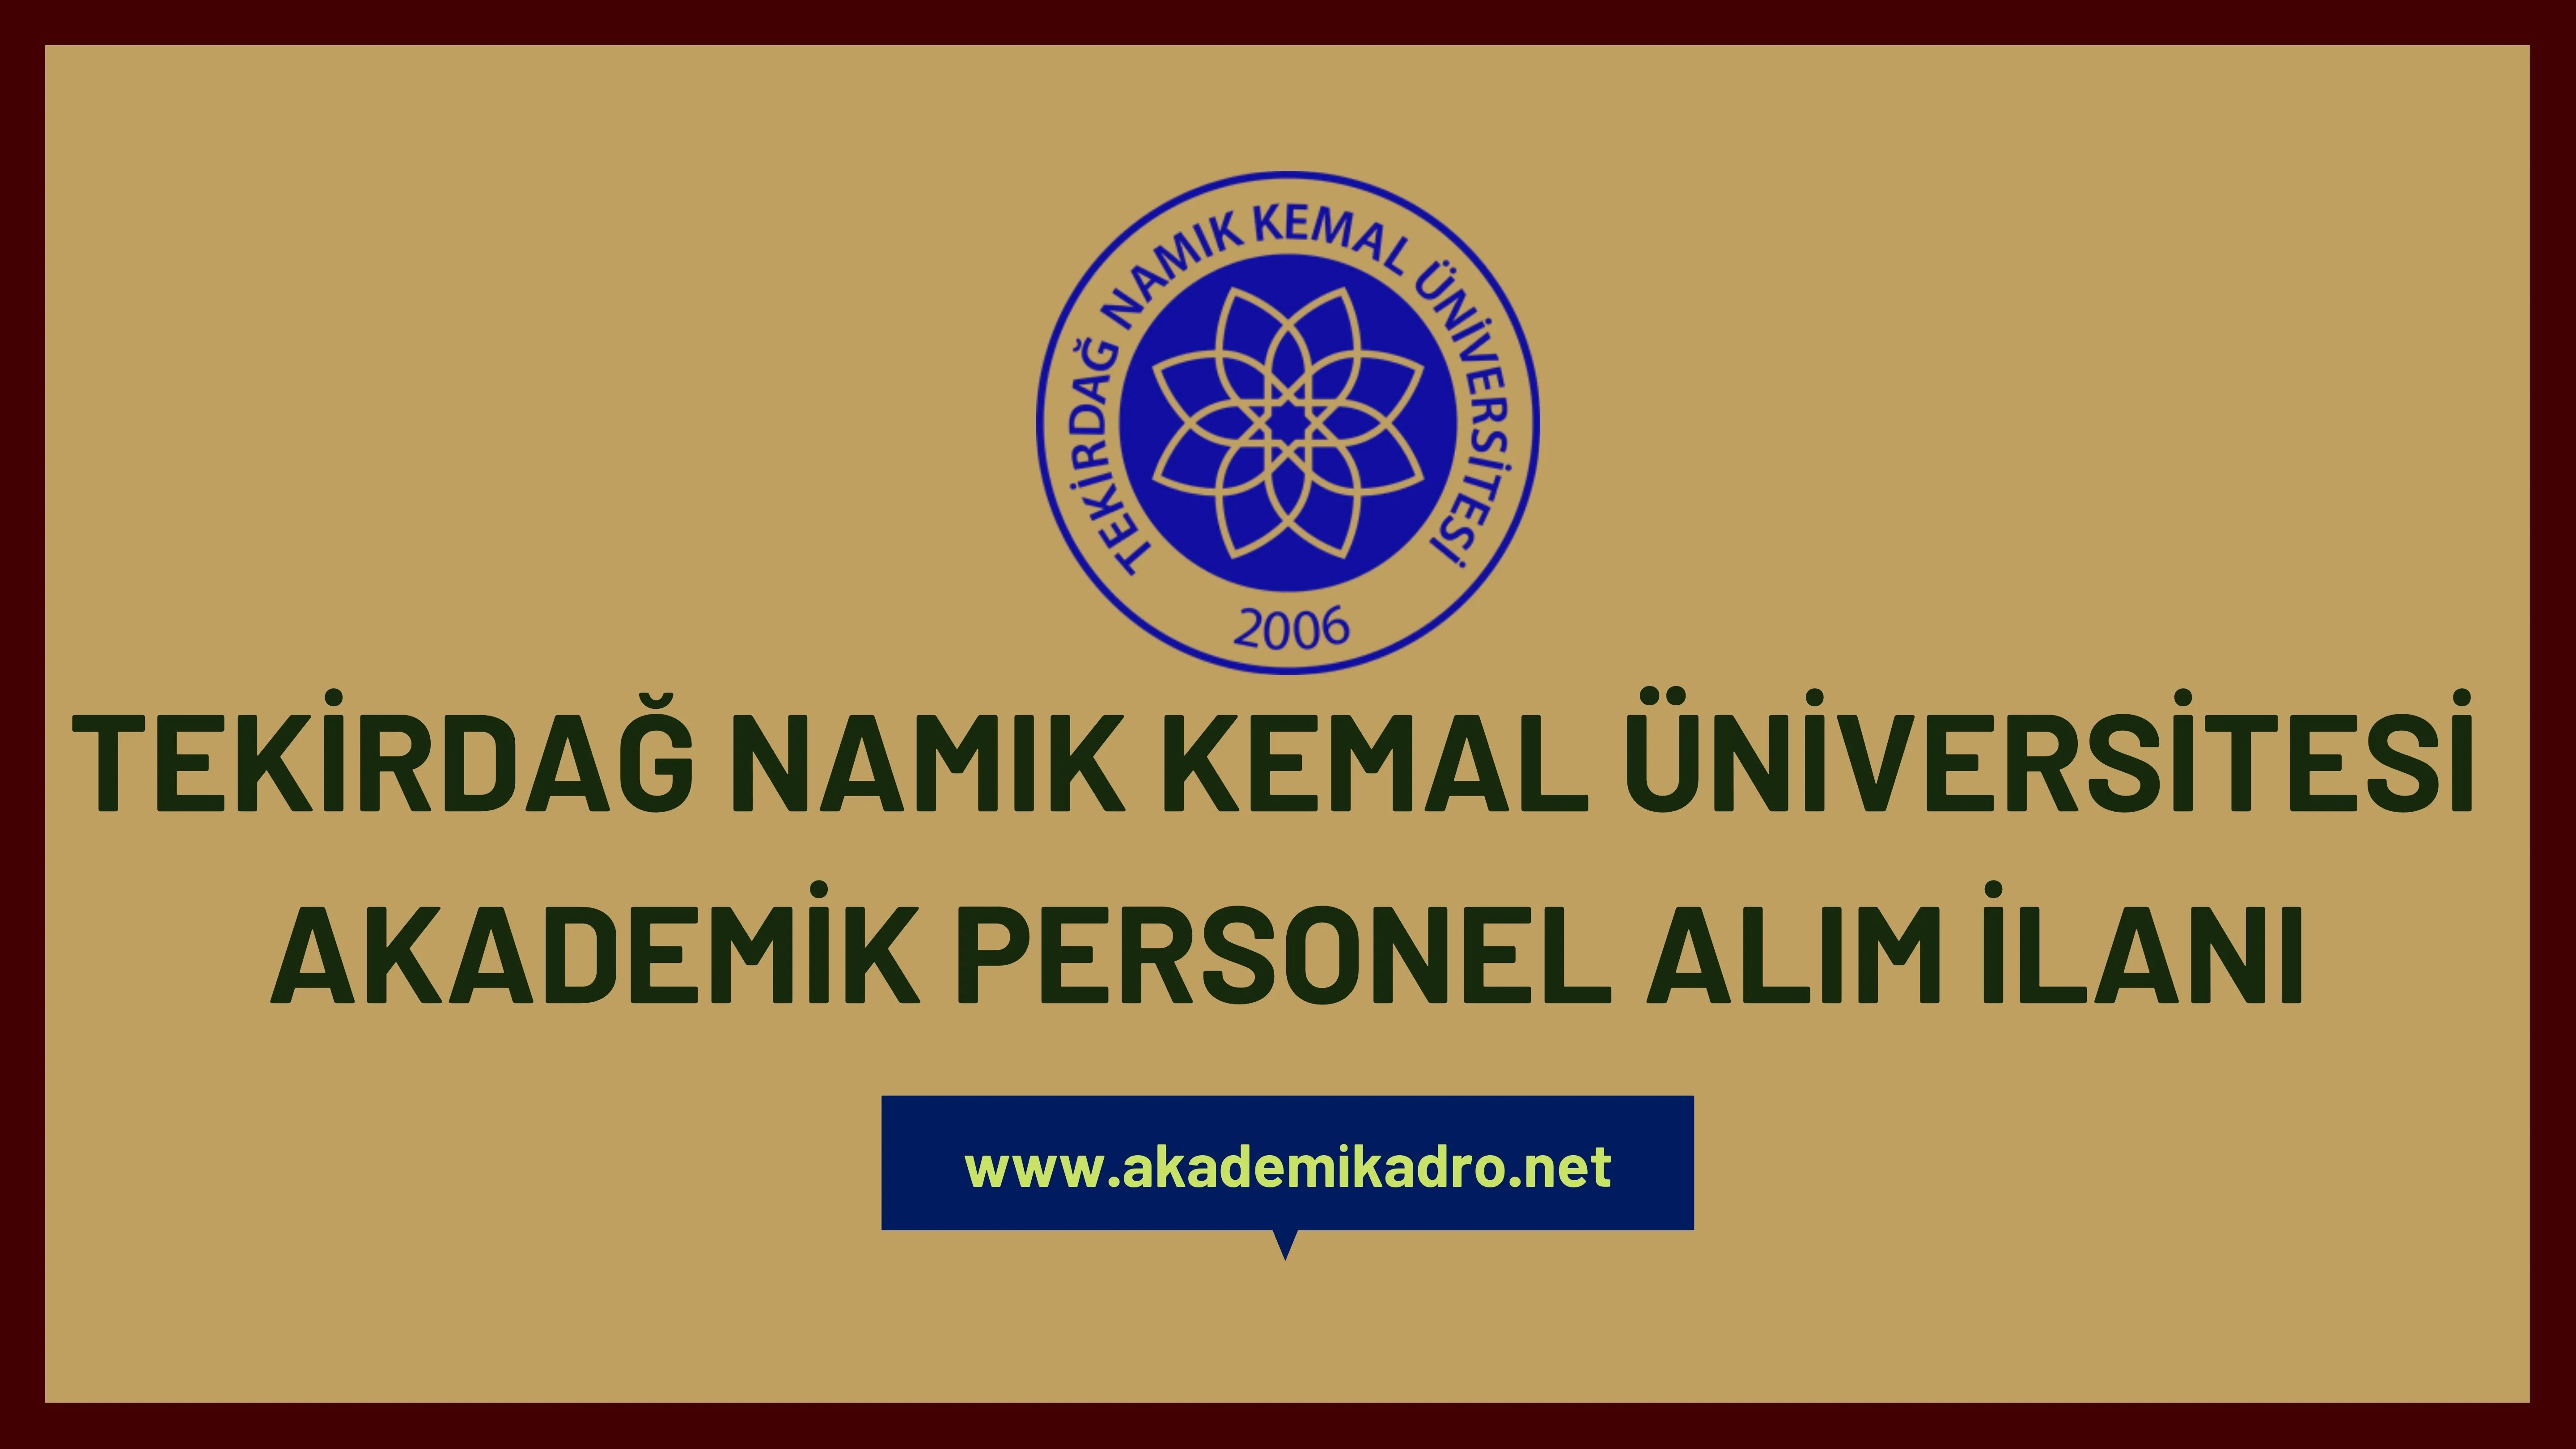 Tekirdağ Namık Kemal Üniversitesi birçok alandan 37 akademik personel alacak.